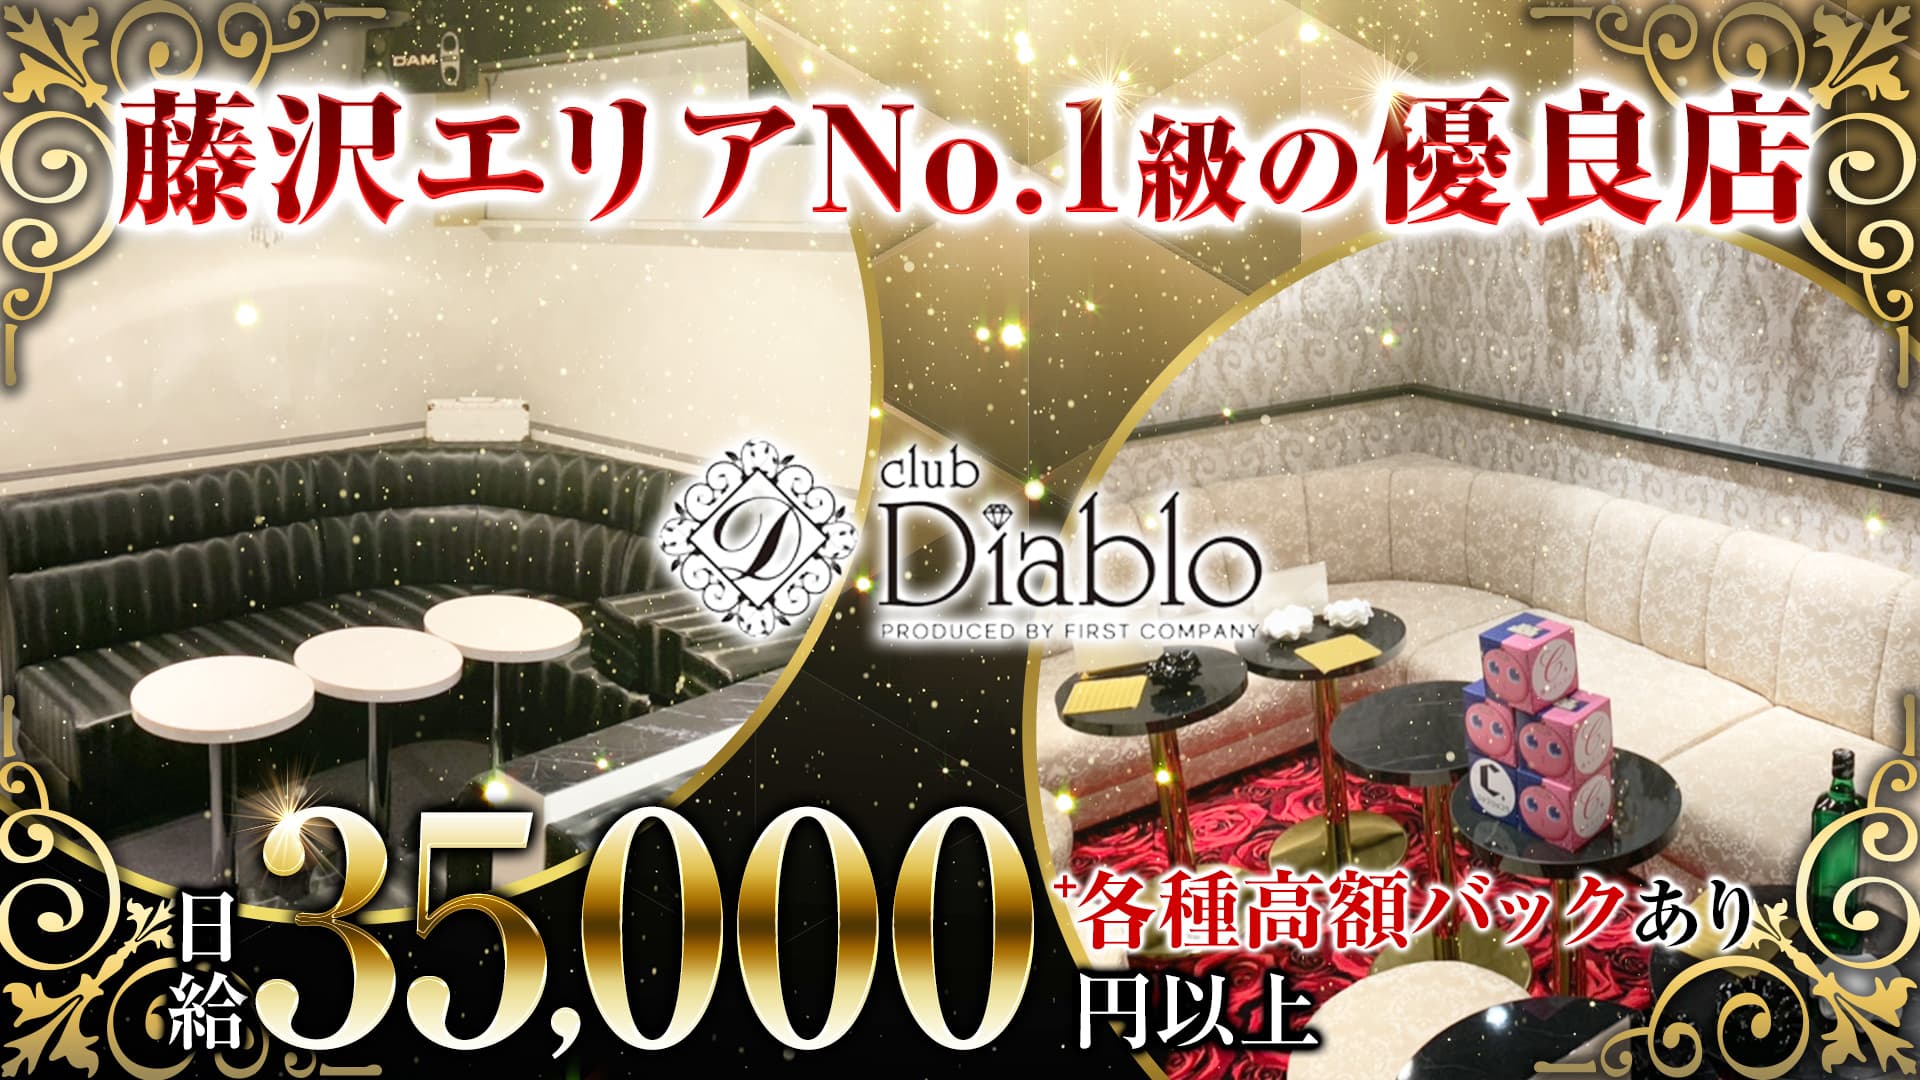 Diablo（ディアブロ）【公式体入・求人情報】 藤沢キャバクラ TOP画像